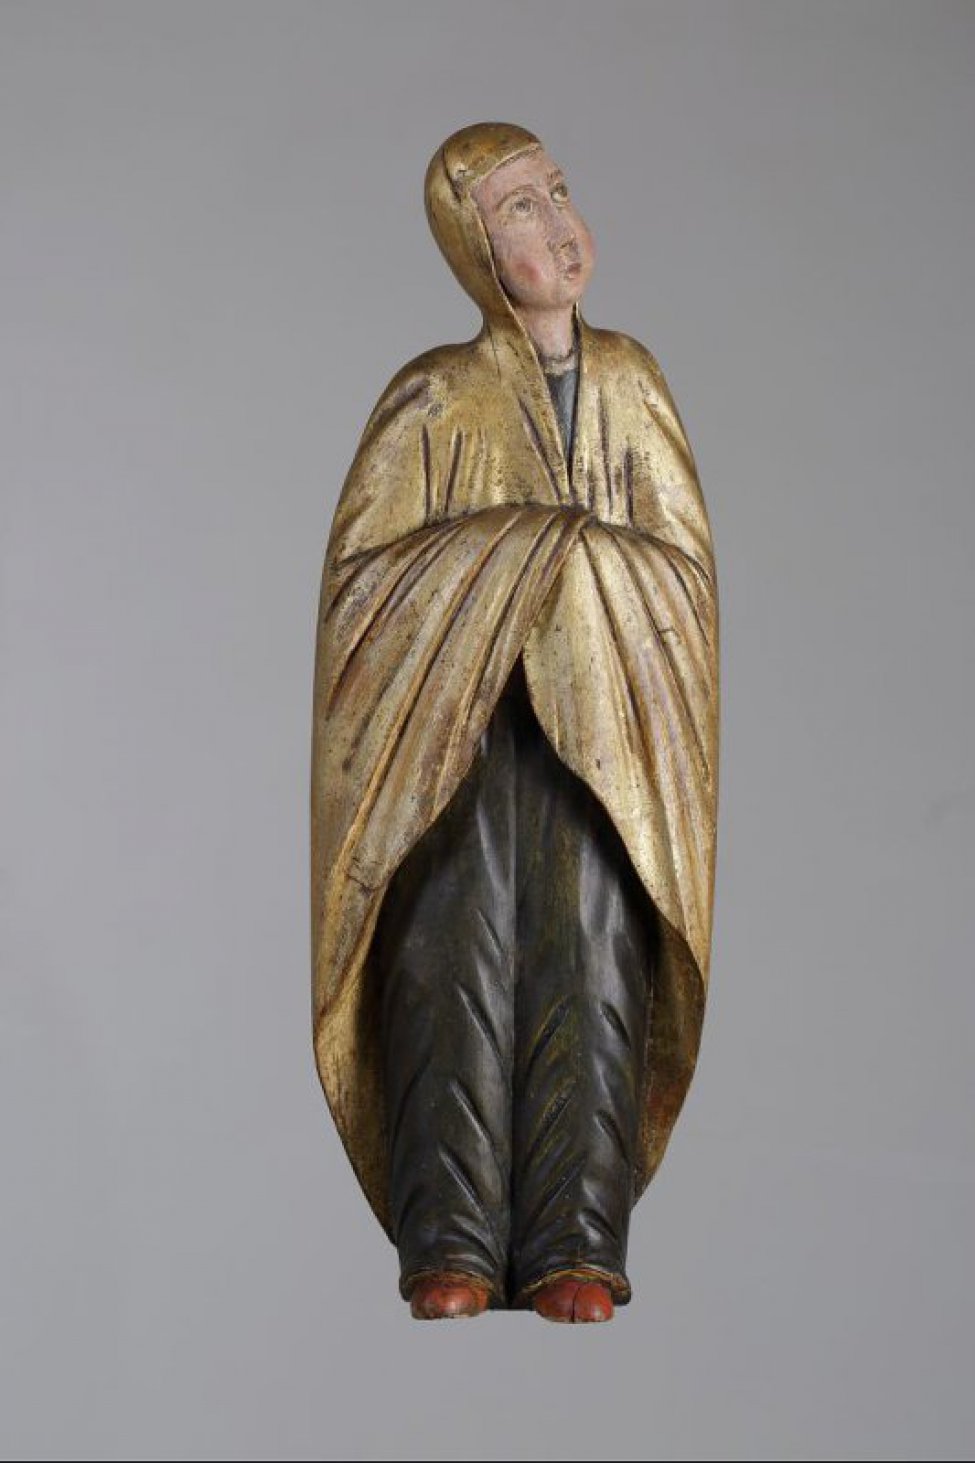 Мария Магдалина изображена со скрещенными на груди руками. Фигура вырезана в позе, направленная немного влево, в посеребренном хитоне и позолоченном гиматии, образующие широкие складки.